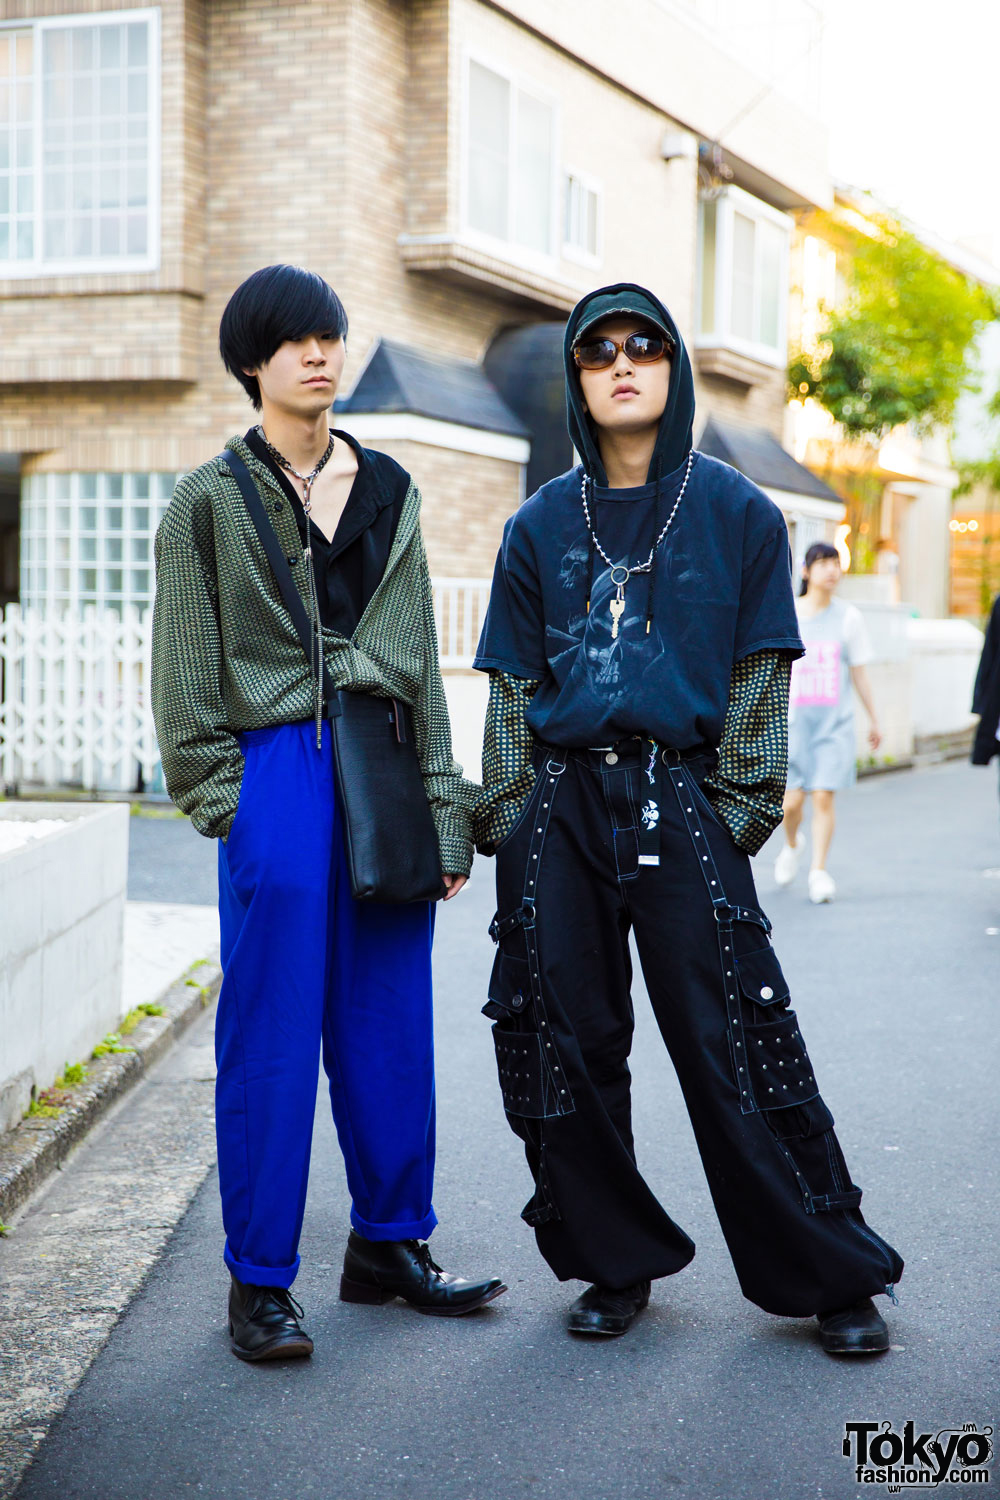 Harajuku Guys in Edgy Streetwear Fashion w/ John Paul Gaultier, Dolce & Gabbana, L.T. Tokyo & Banny